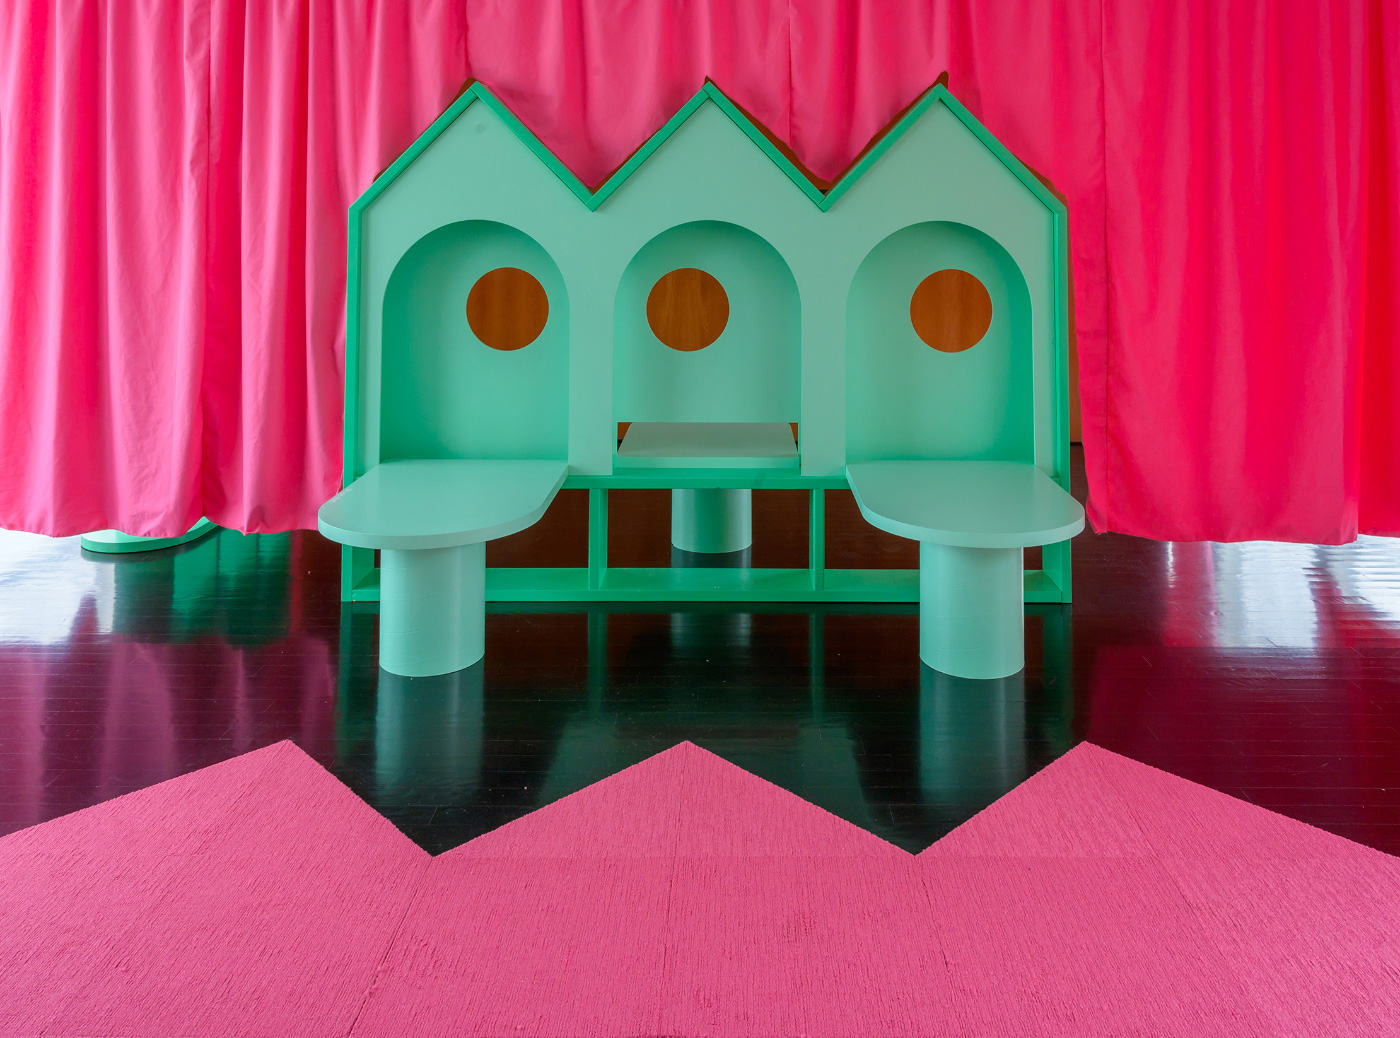 粉红色窗帘前的绿色房子一样的家具